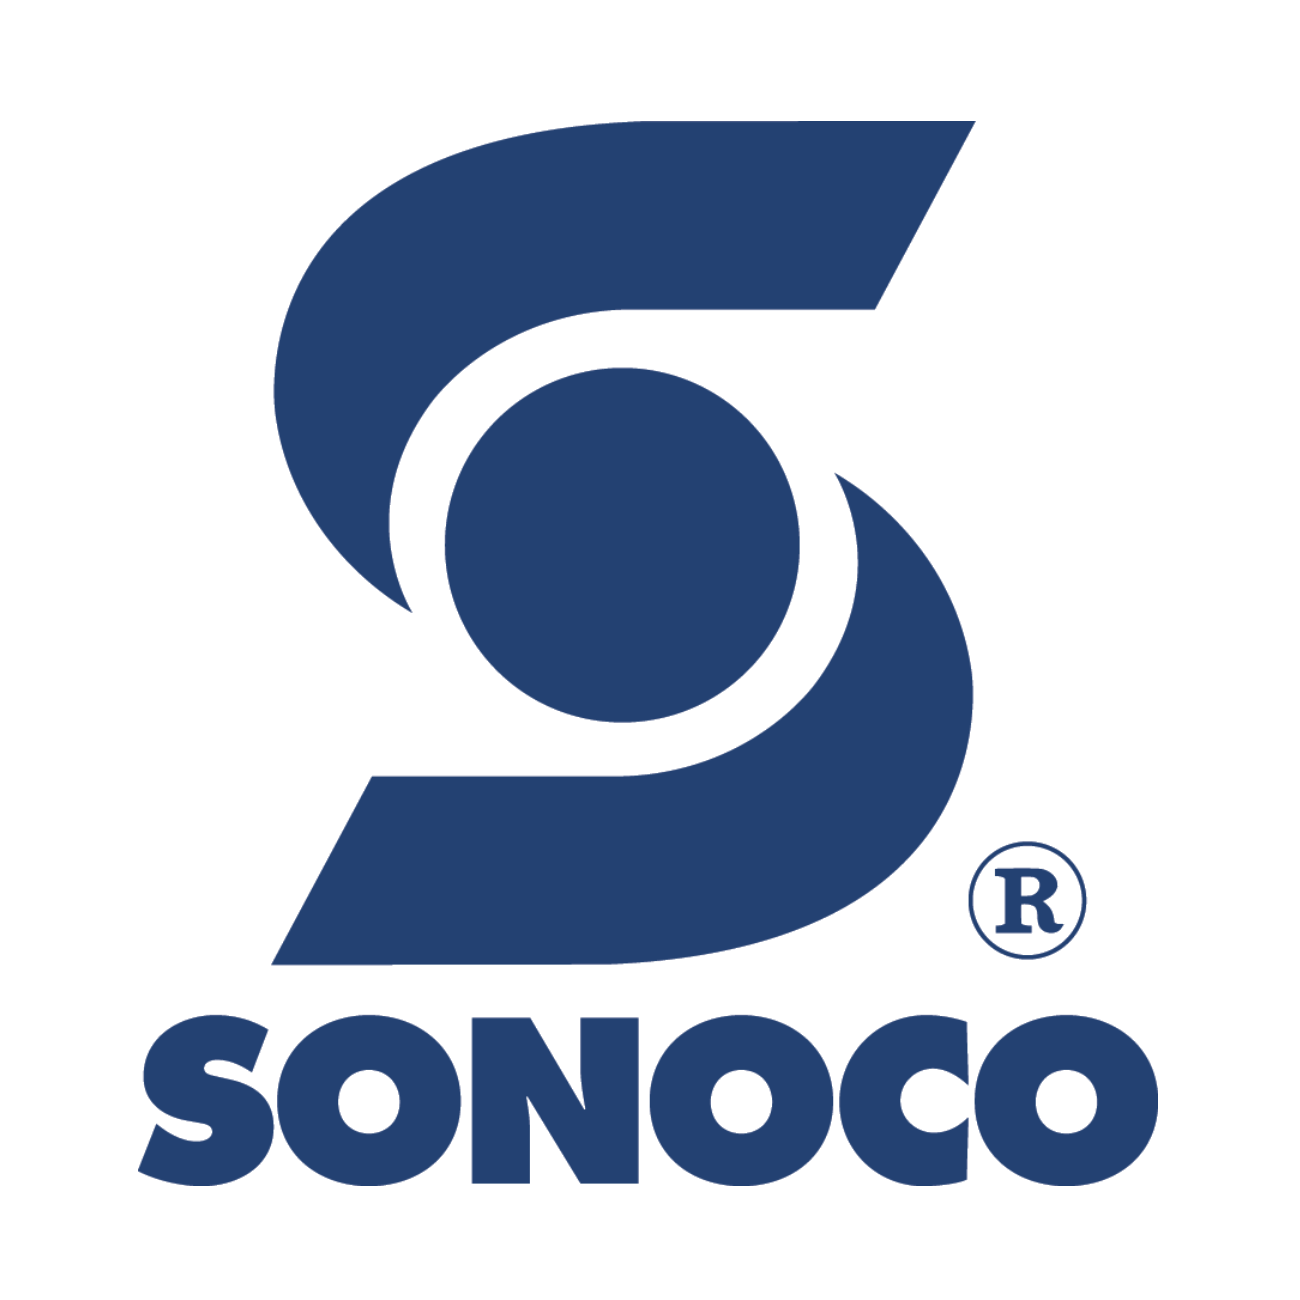 Sonoco-logo.png